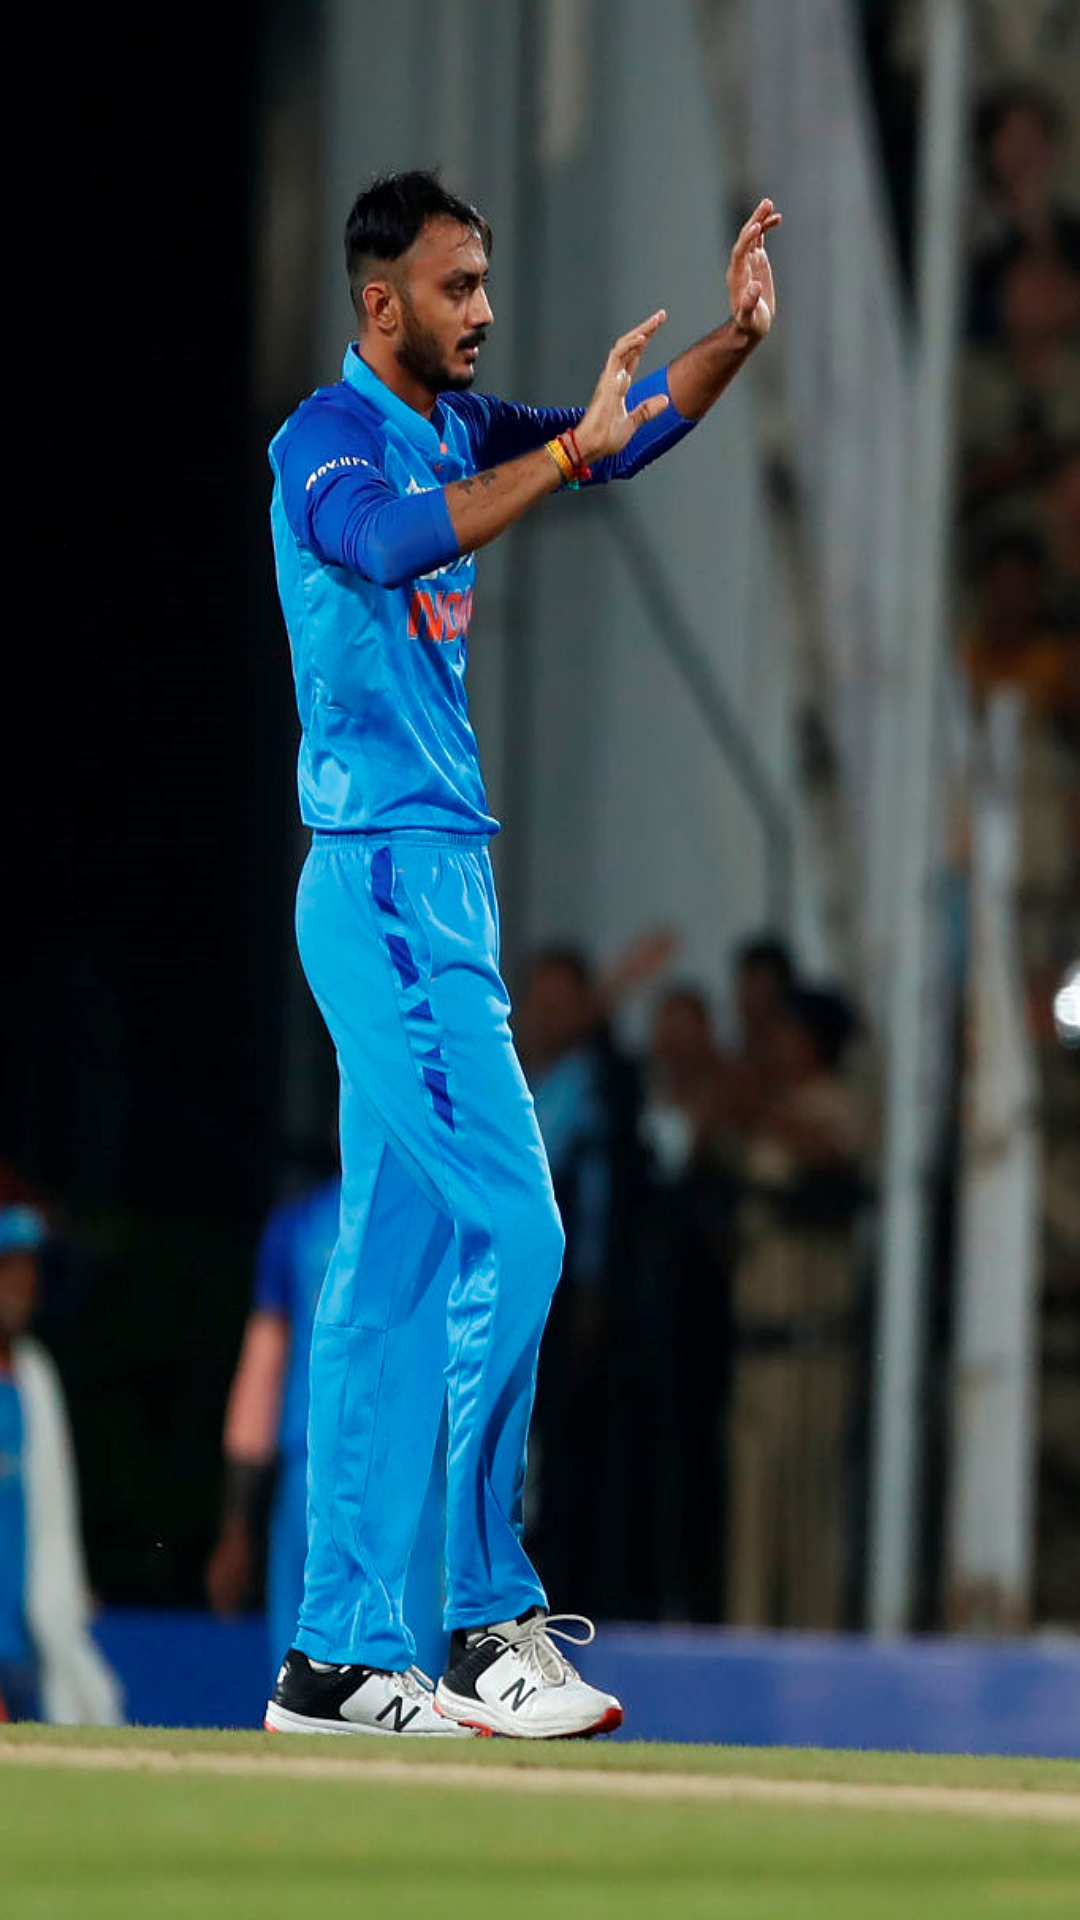 IND vs AUS टी20 सीरीज में इन 5 गेंदबाजों का रहा डंका, झटके सबसे ज्यादा विकेट